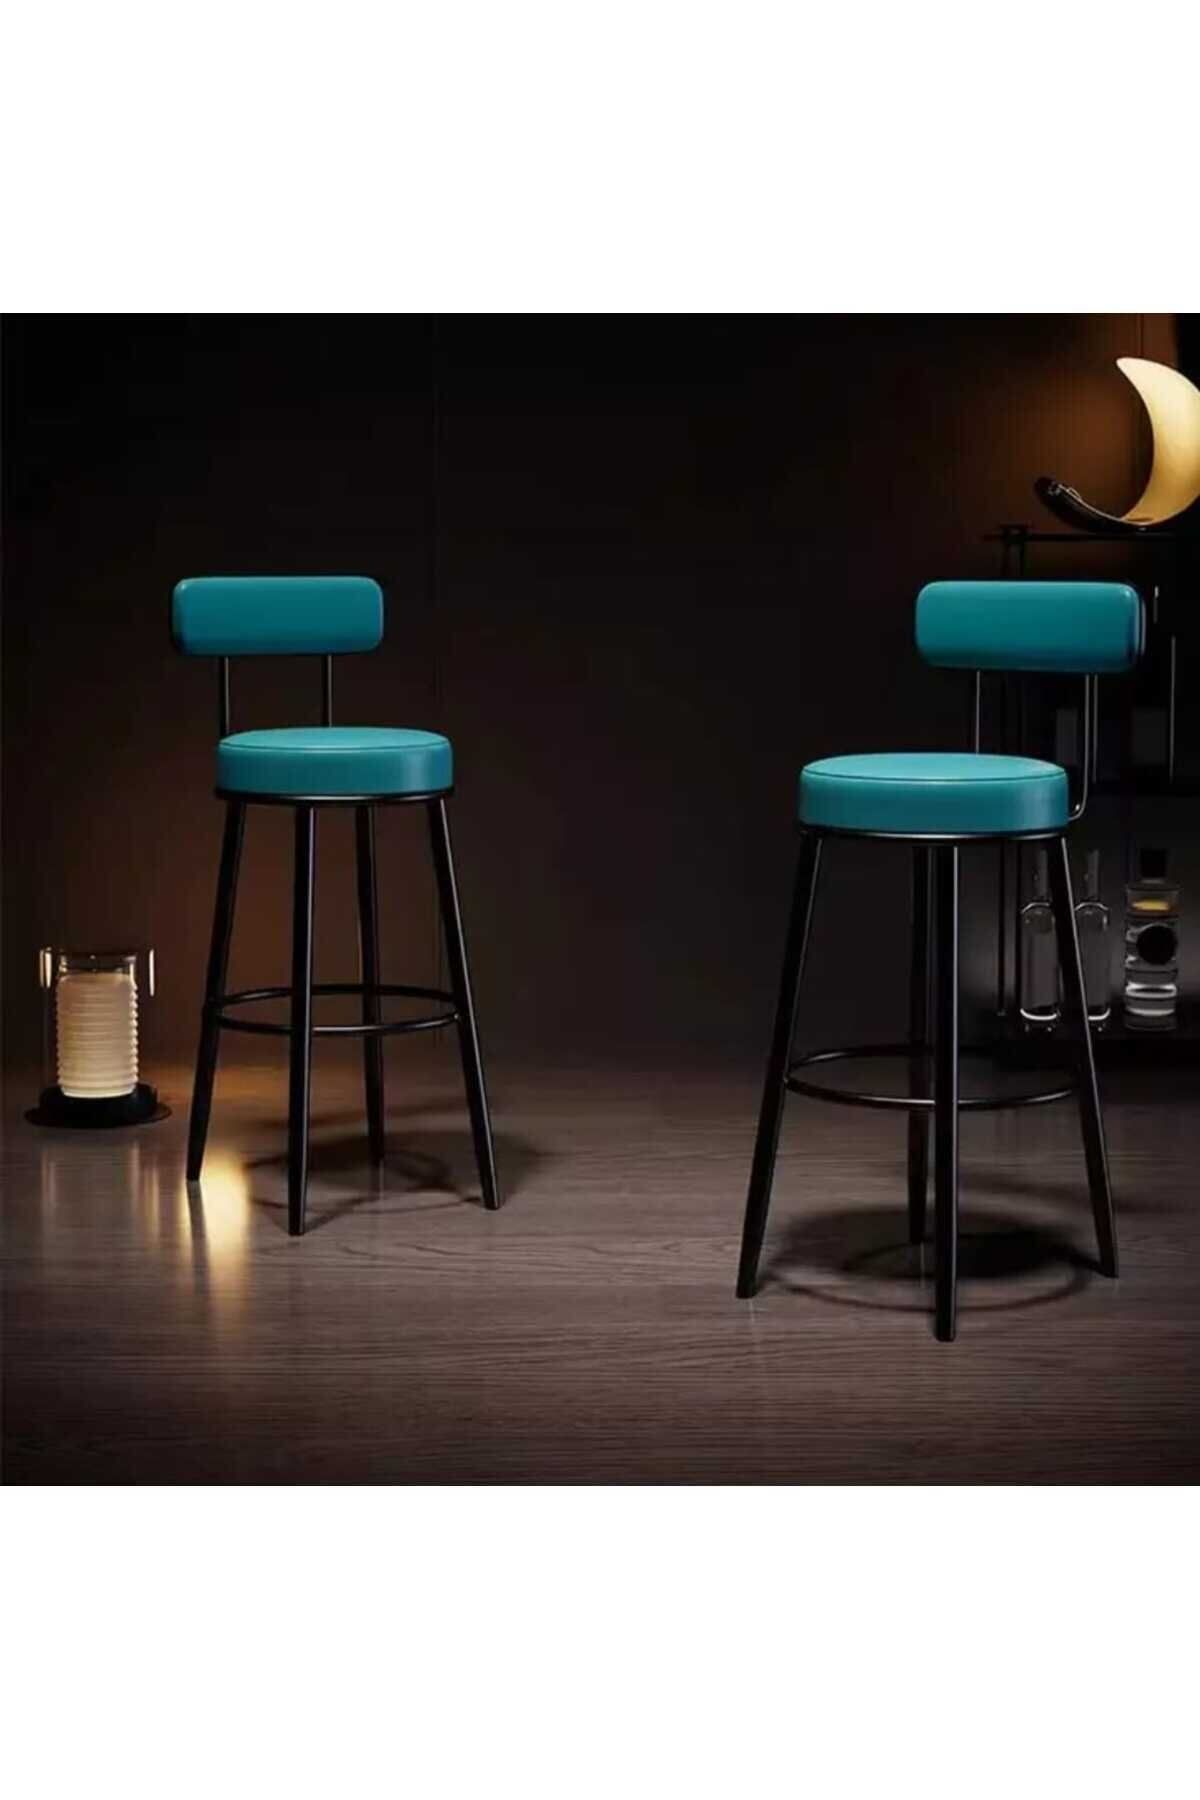 J&S QUALİTY Montaj Gerektirmez Hazır Bar Sandalyesi Ikea Tasarımı 75 Cm Mutfak Adası Bar Taburesi Özel